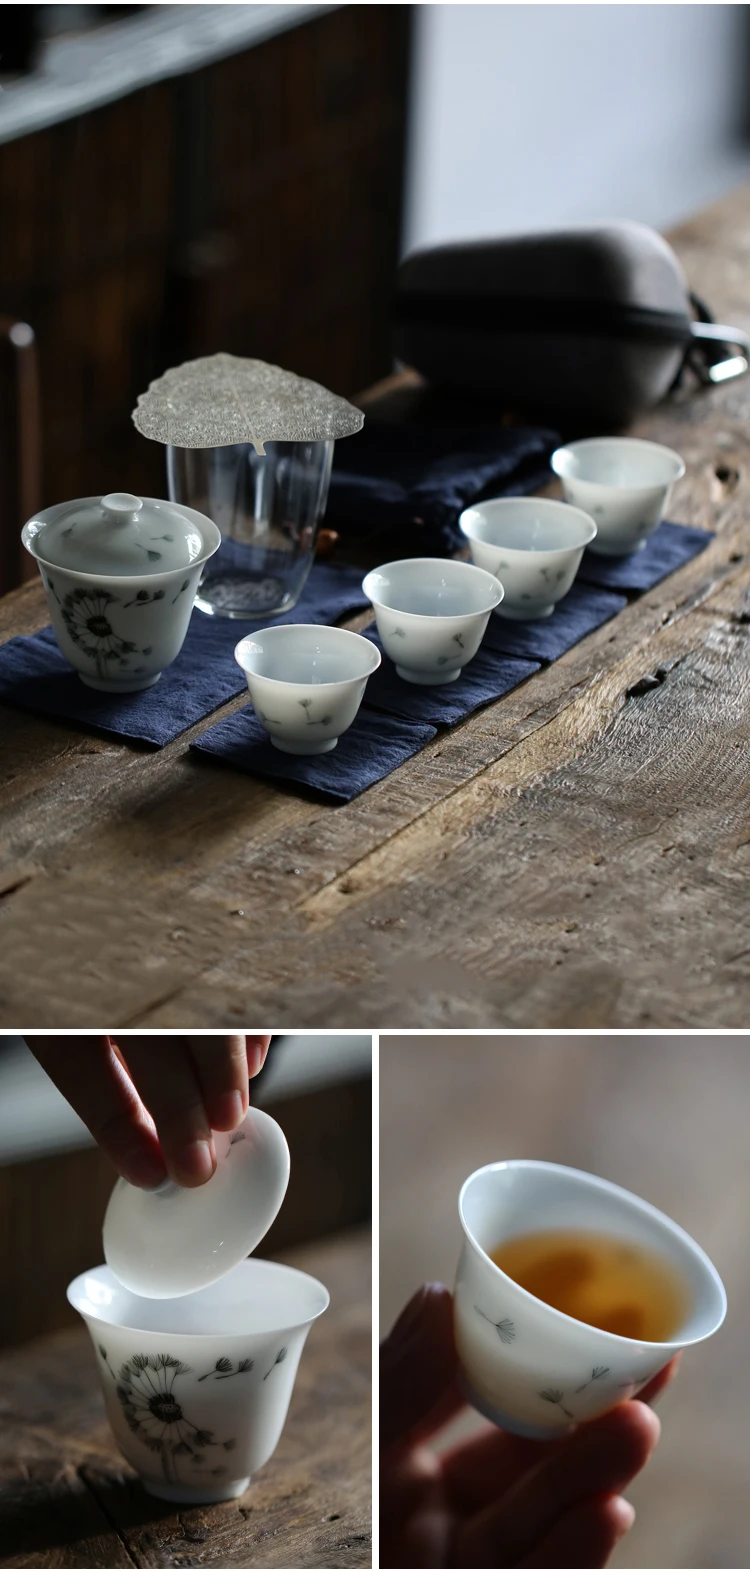 TANGPIN керамический чайник gaiwan чайные чашки китайский чайный набор с сумкой для путешествий